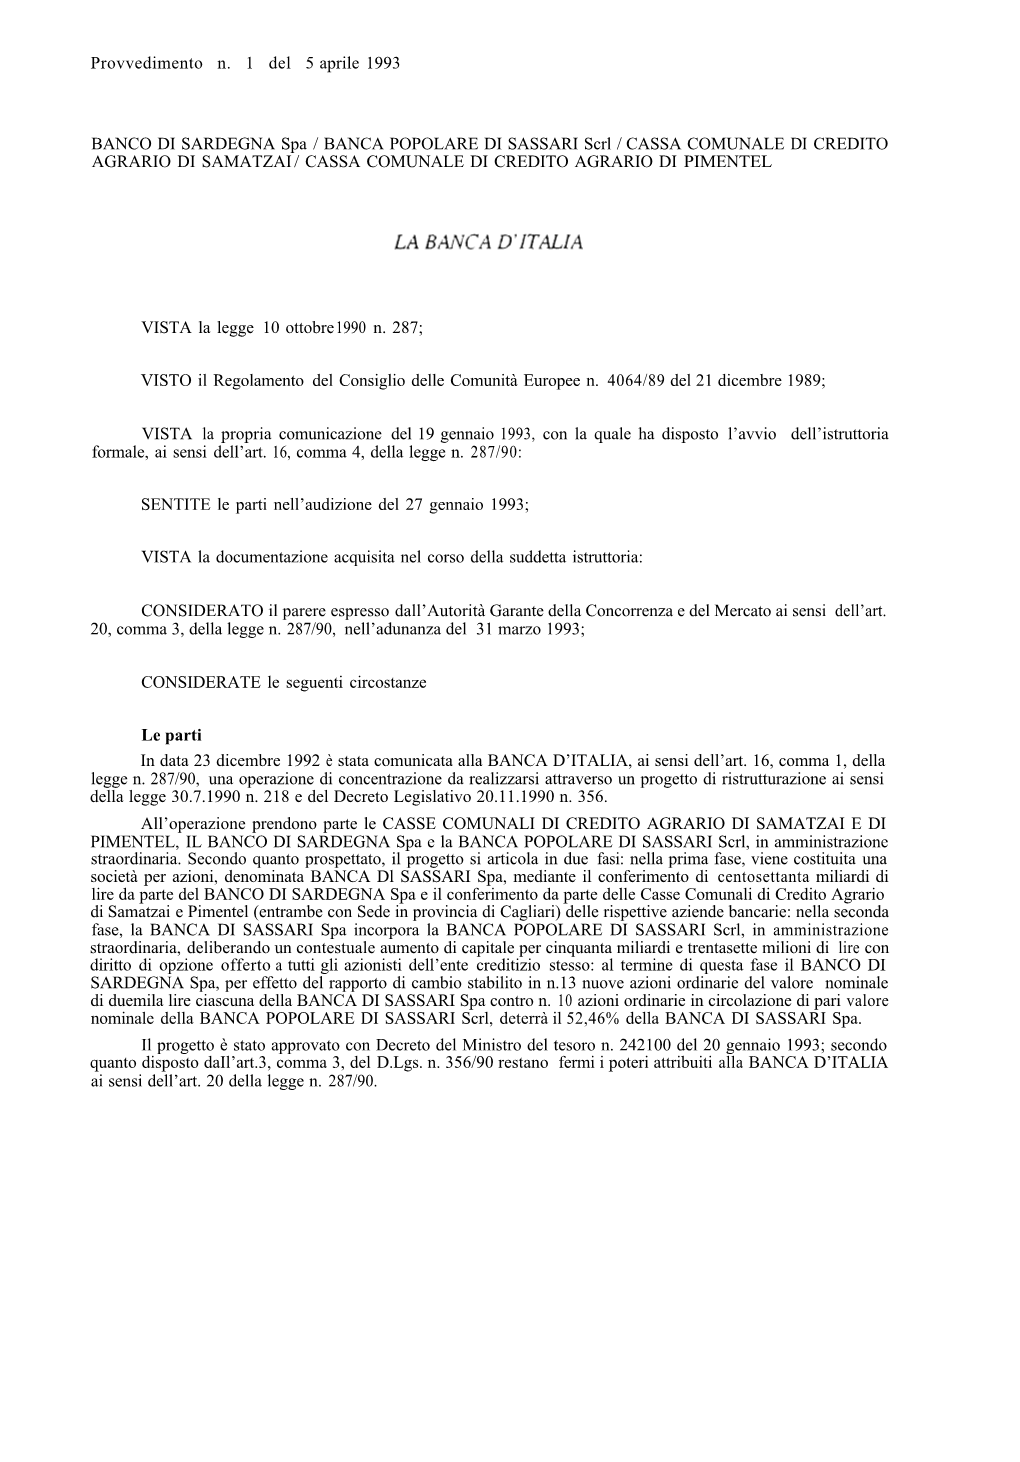 Provvedimento N. 1 Del 5 Aprile 1993 BANCO DI SARDEGNA / Spa / BANCA POPOLARE DI SASSARI Scrl / CASSA COMUNALE DI CREDITO AGRARI